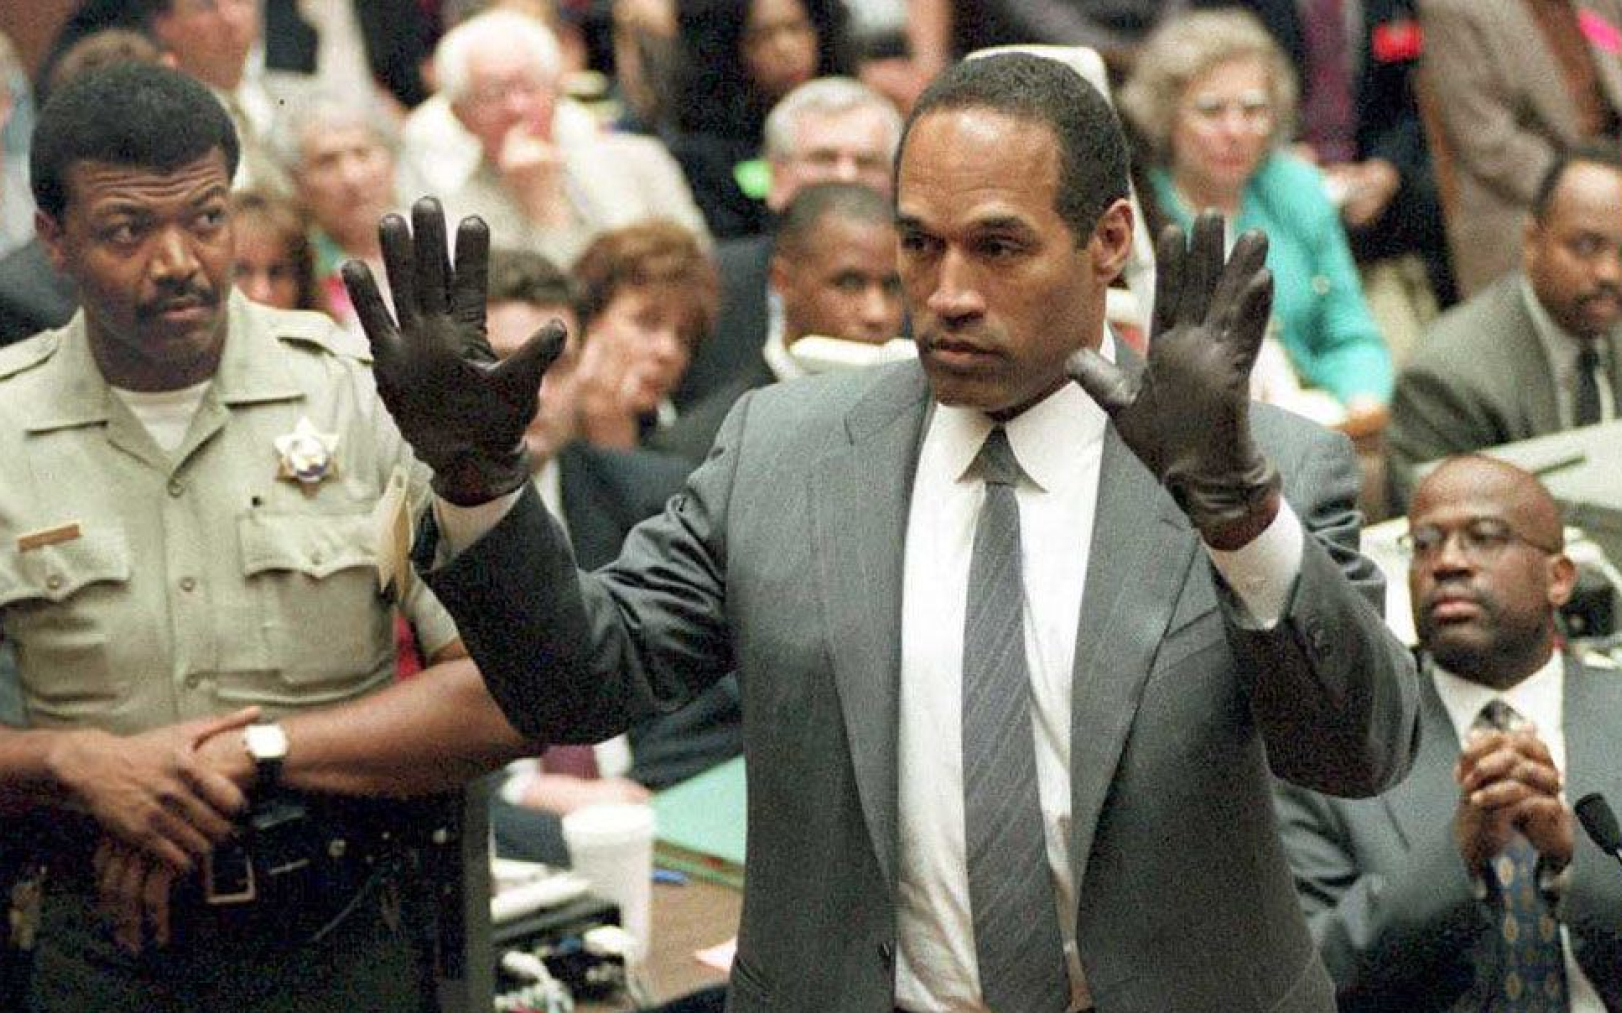 Le 21 juin 1995, lors de son procès à Los Angeles, O.J. Simpson essaye des gants ensanglantés retrouvés au 875 Bundy Drive, là où son ex-femme Nicole Brown a été retrouvée morte poignardée, un an plus tôt.  AFP/Vince Bucci